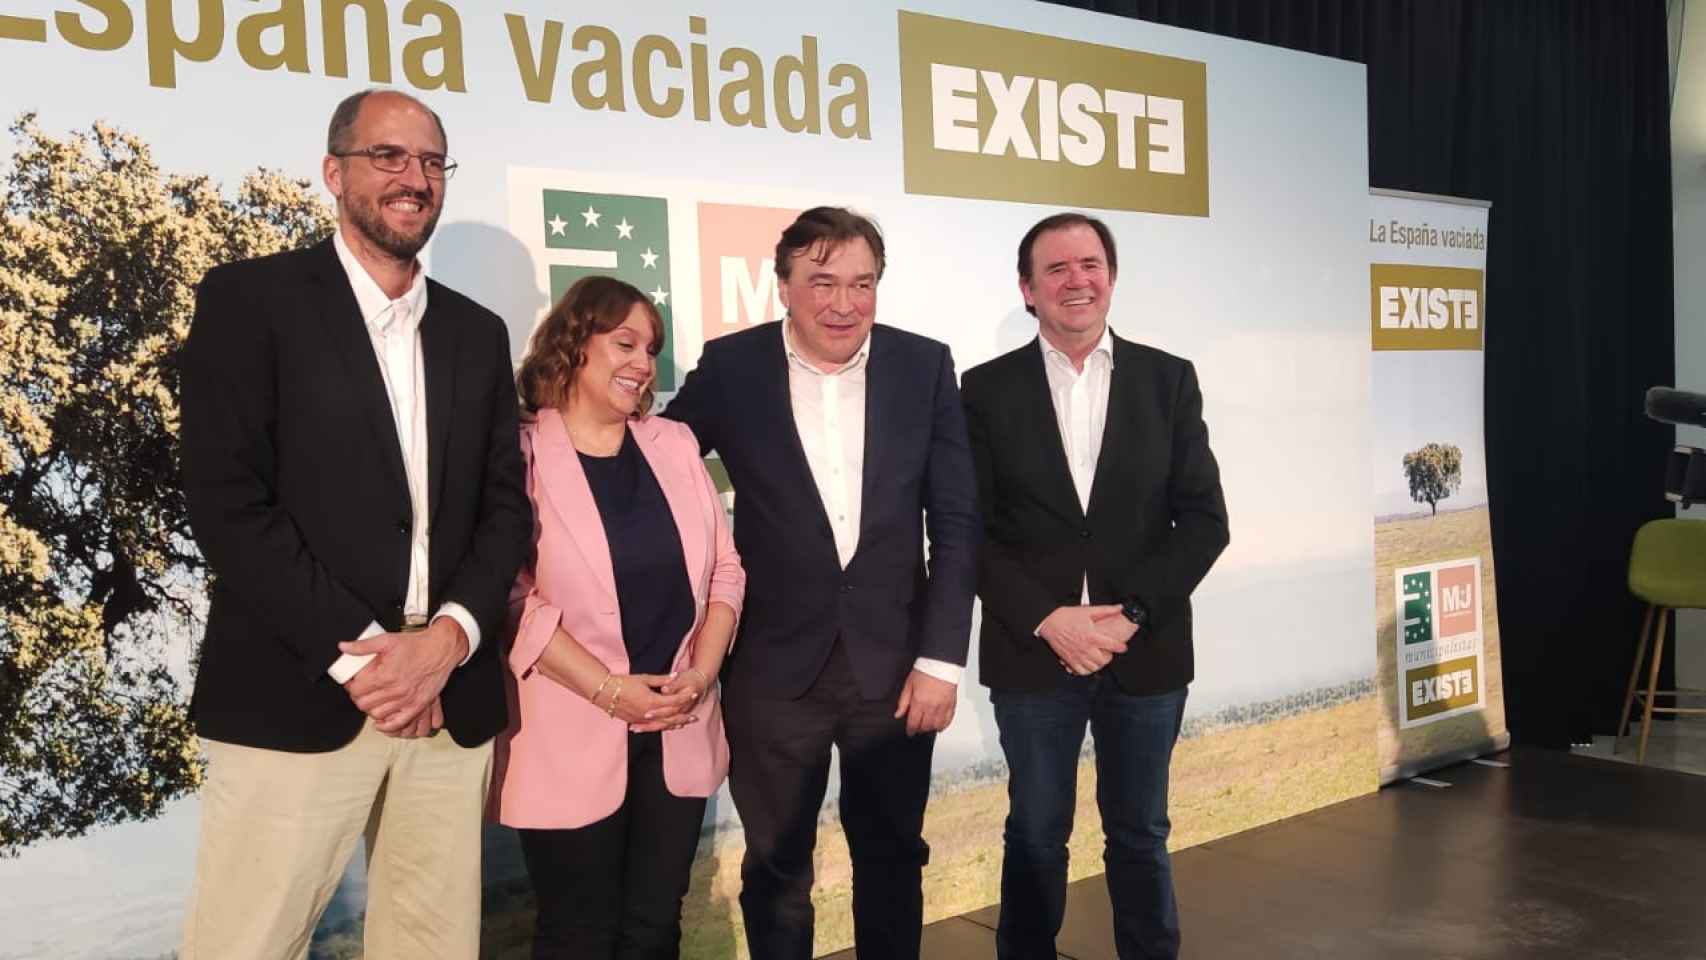 Tomás Guitarte (Teruel Existe), junto a Ángel Montealegre , Vanessa García (Soria YA) y Jorge Serrano (M+J), en la presentación de la candidatura